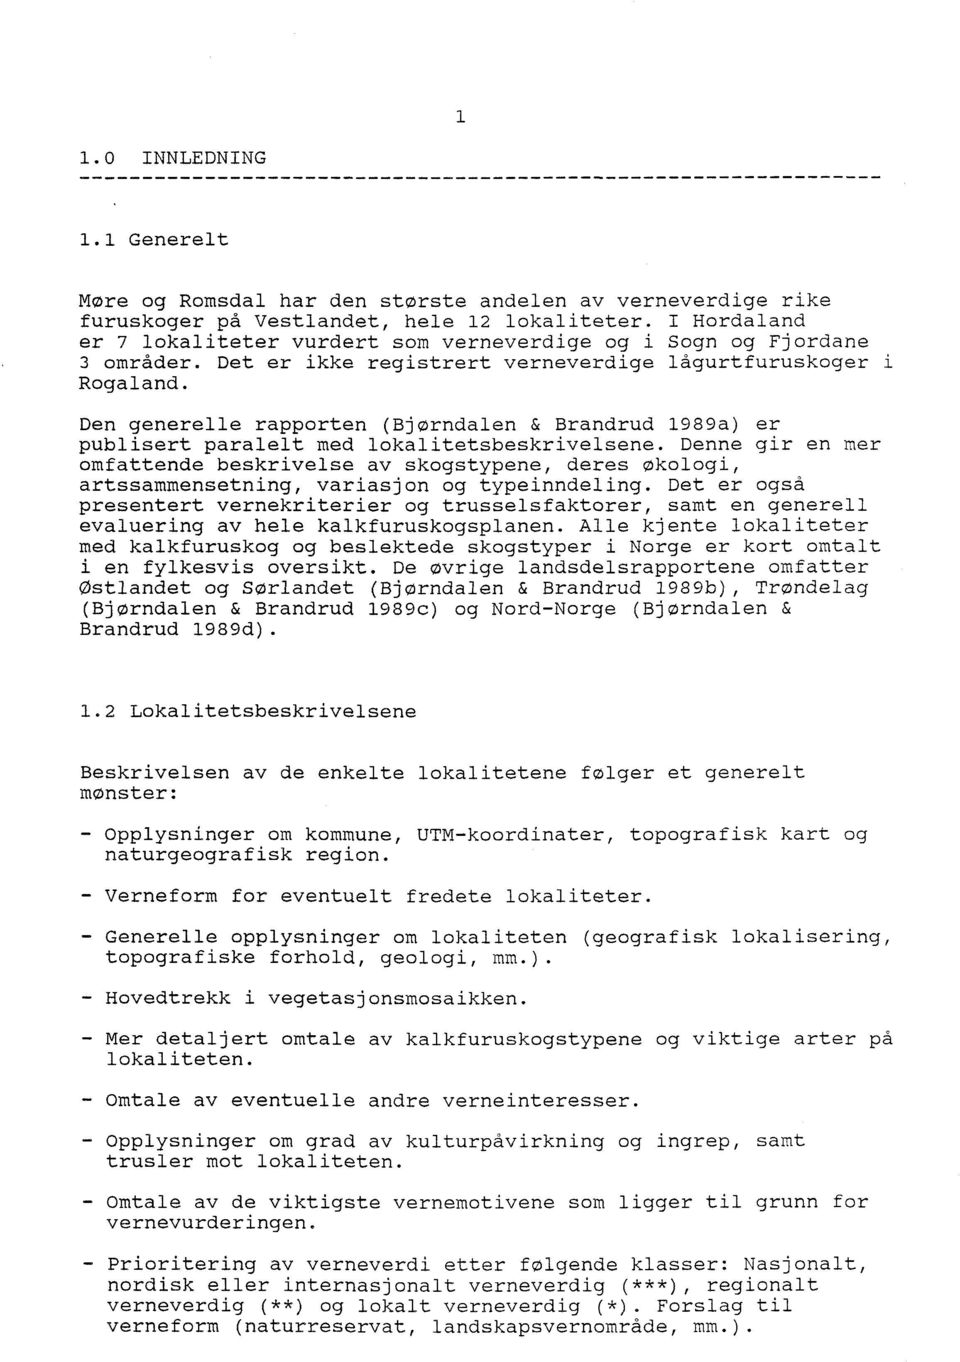 Den generelle rapporten (Bjørndalen & Brandrud 1989a) er publisert paralelt med lokalitetsbeskrivelsene.